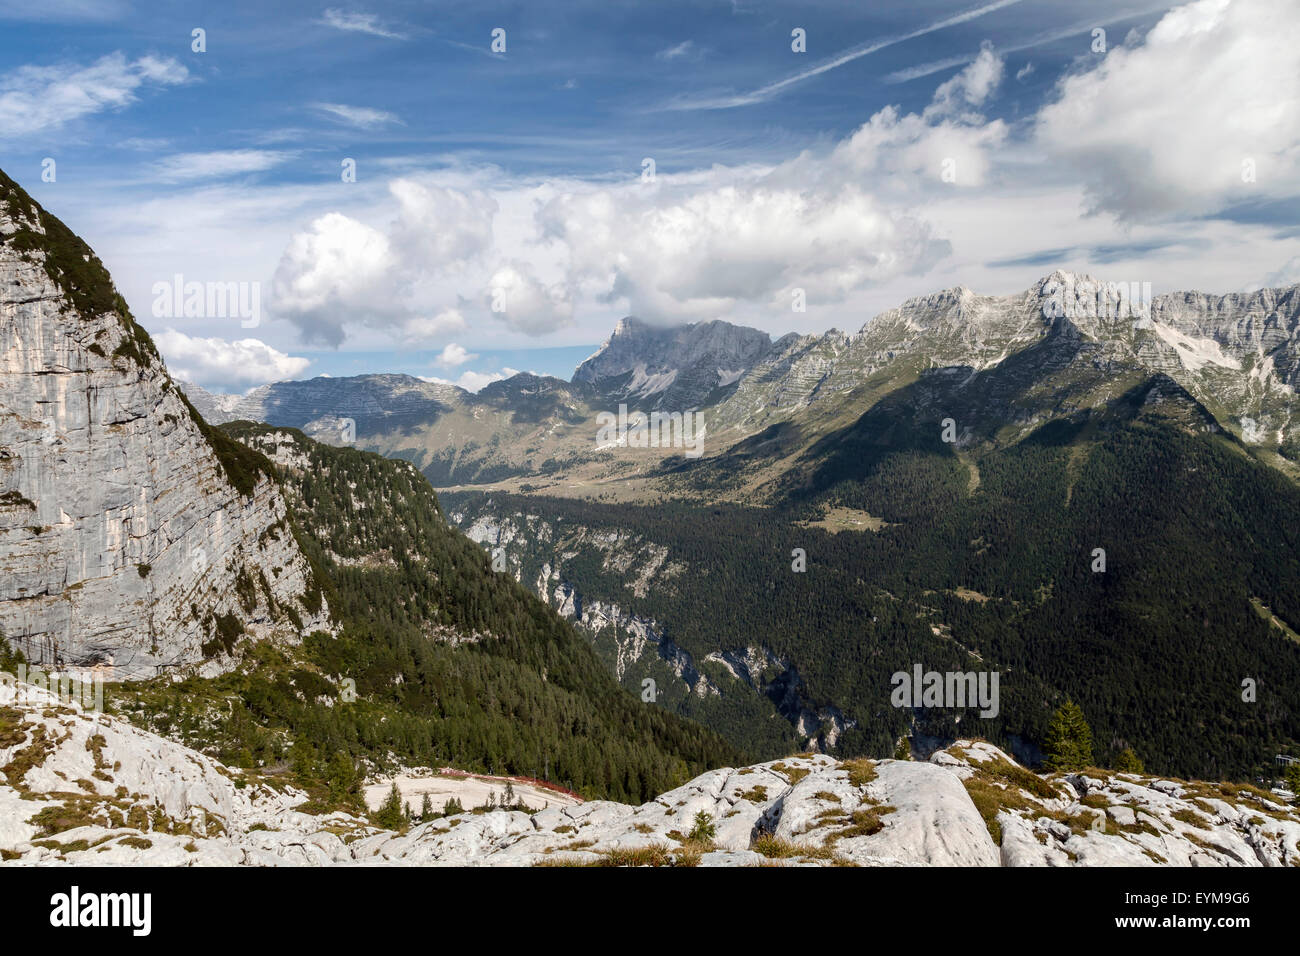 Auf der Kanin-Gruppe, Italien, Julische Alpen III Foto Stock